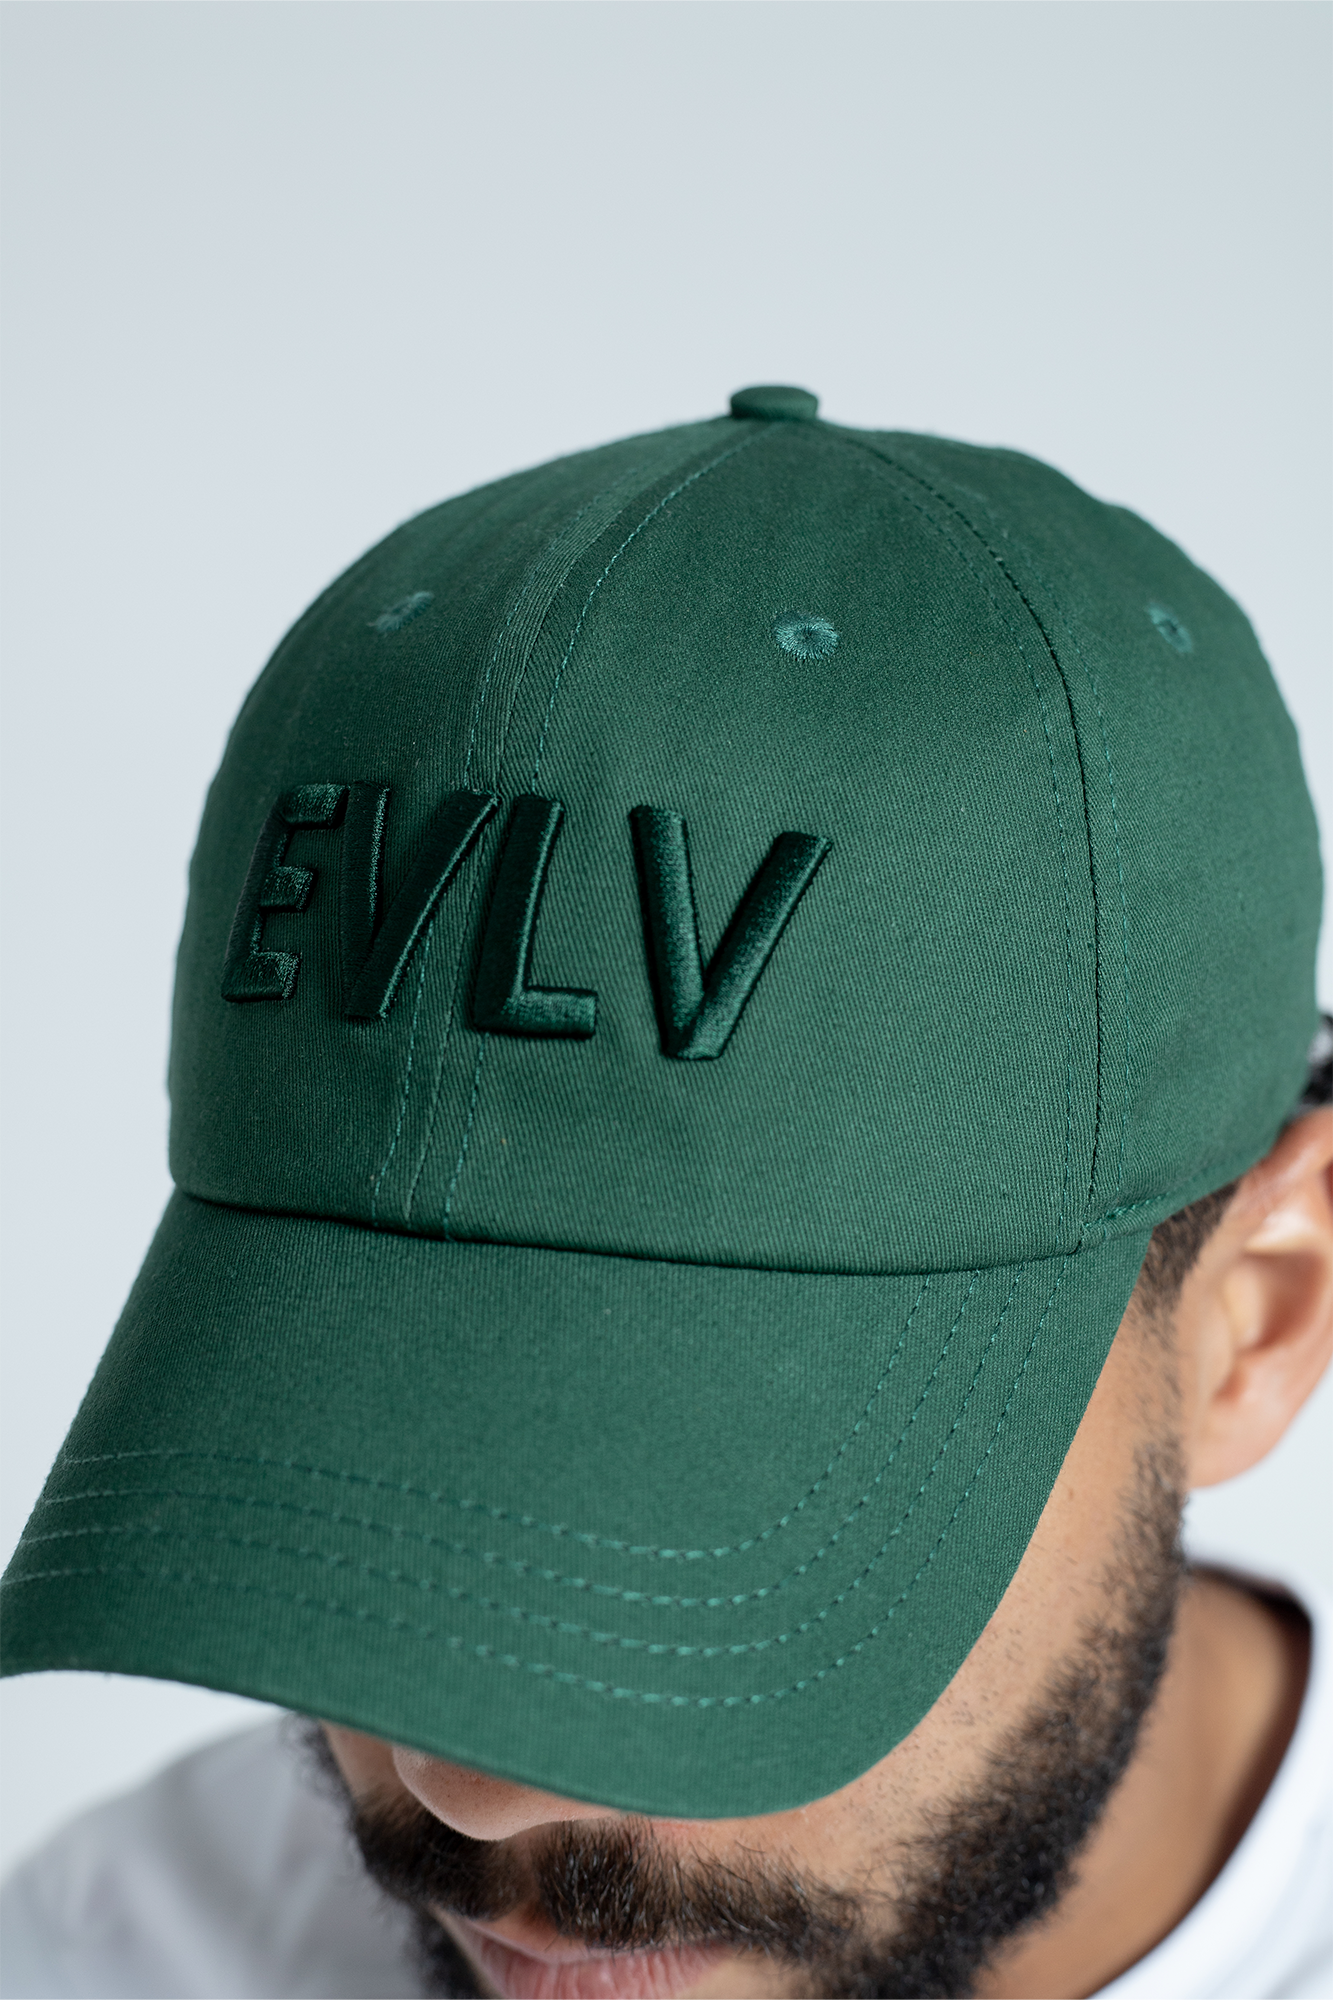 EVLV Signature Cap